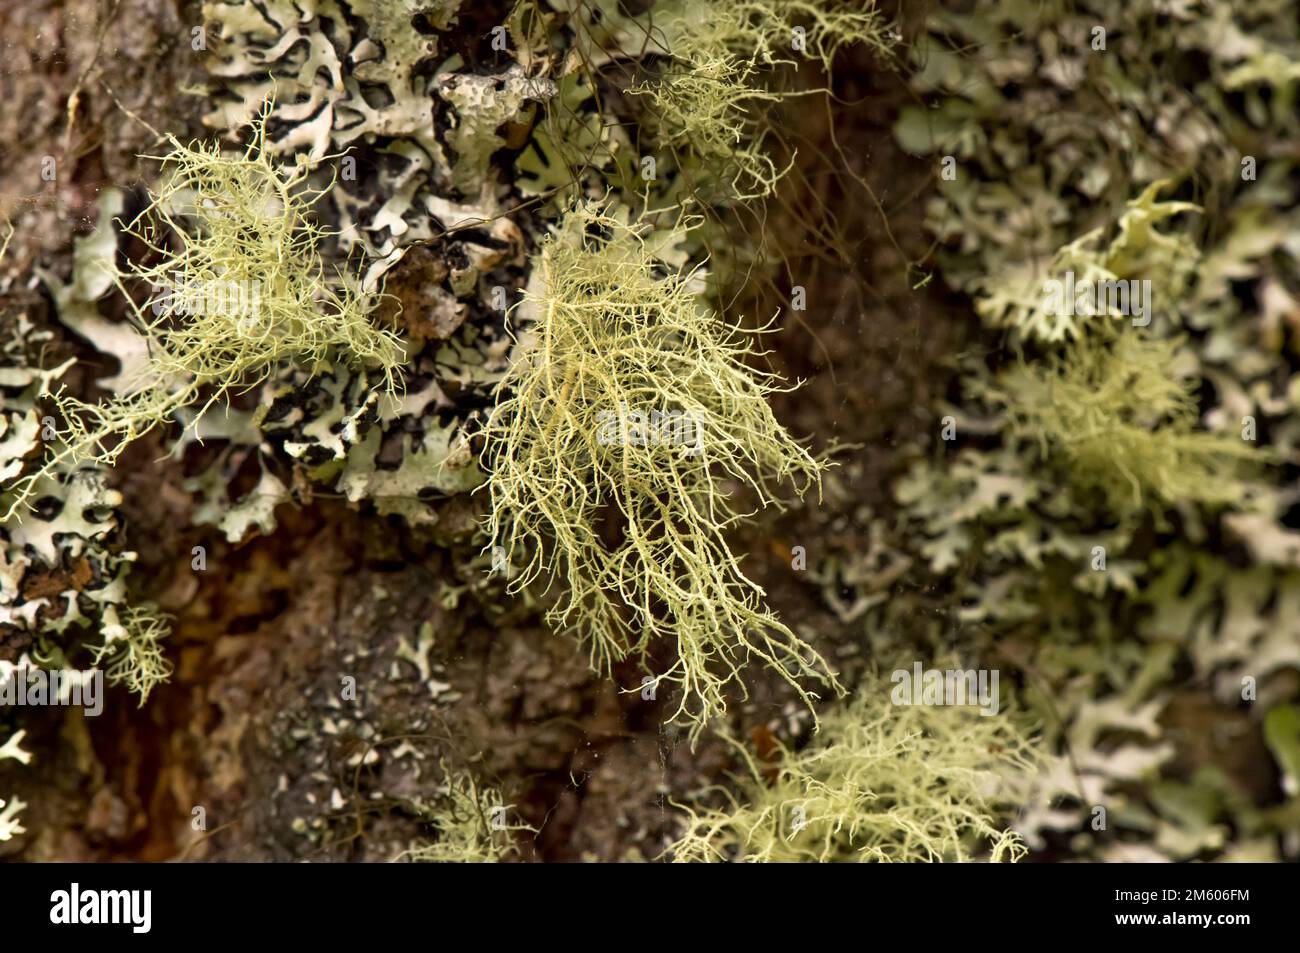 fruticose Lichens on a tree branch Stock Photo